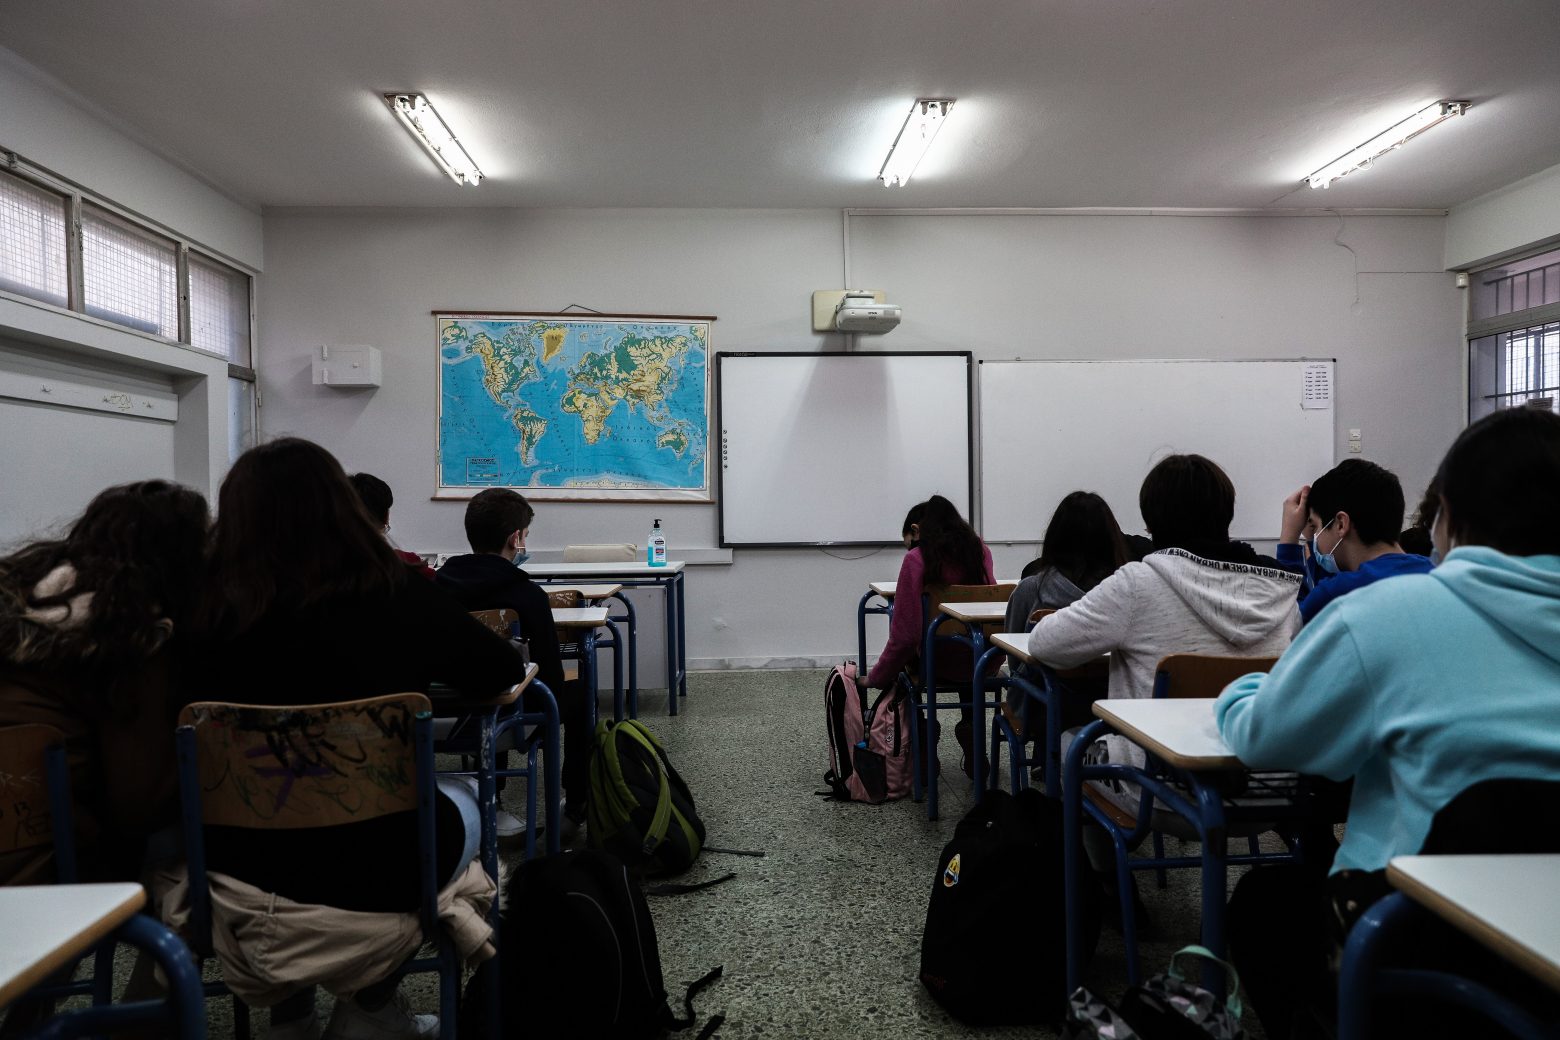 Πρόσληψη εκπαιδευτικών στη Δευτεροβάθμια Εκπαίδευση, για την ενίσχυση της οικονομικής παιδείας, ζητά το Οικονομικό Επιμελητήριο Ελλάδος.